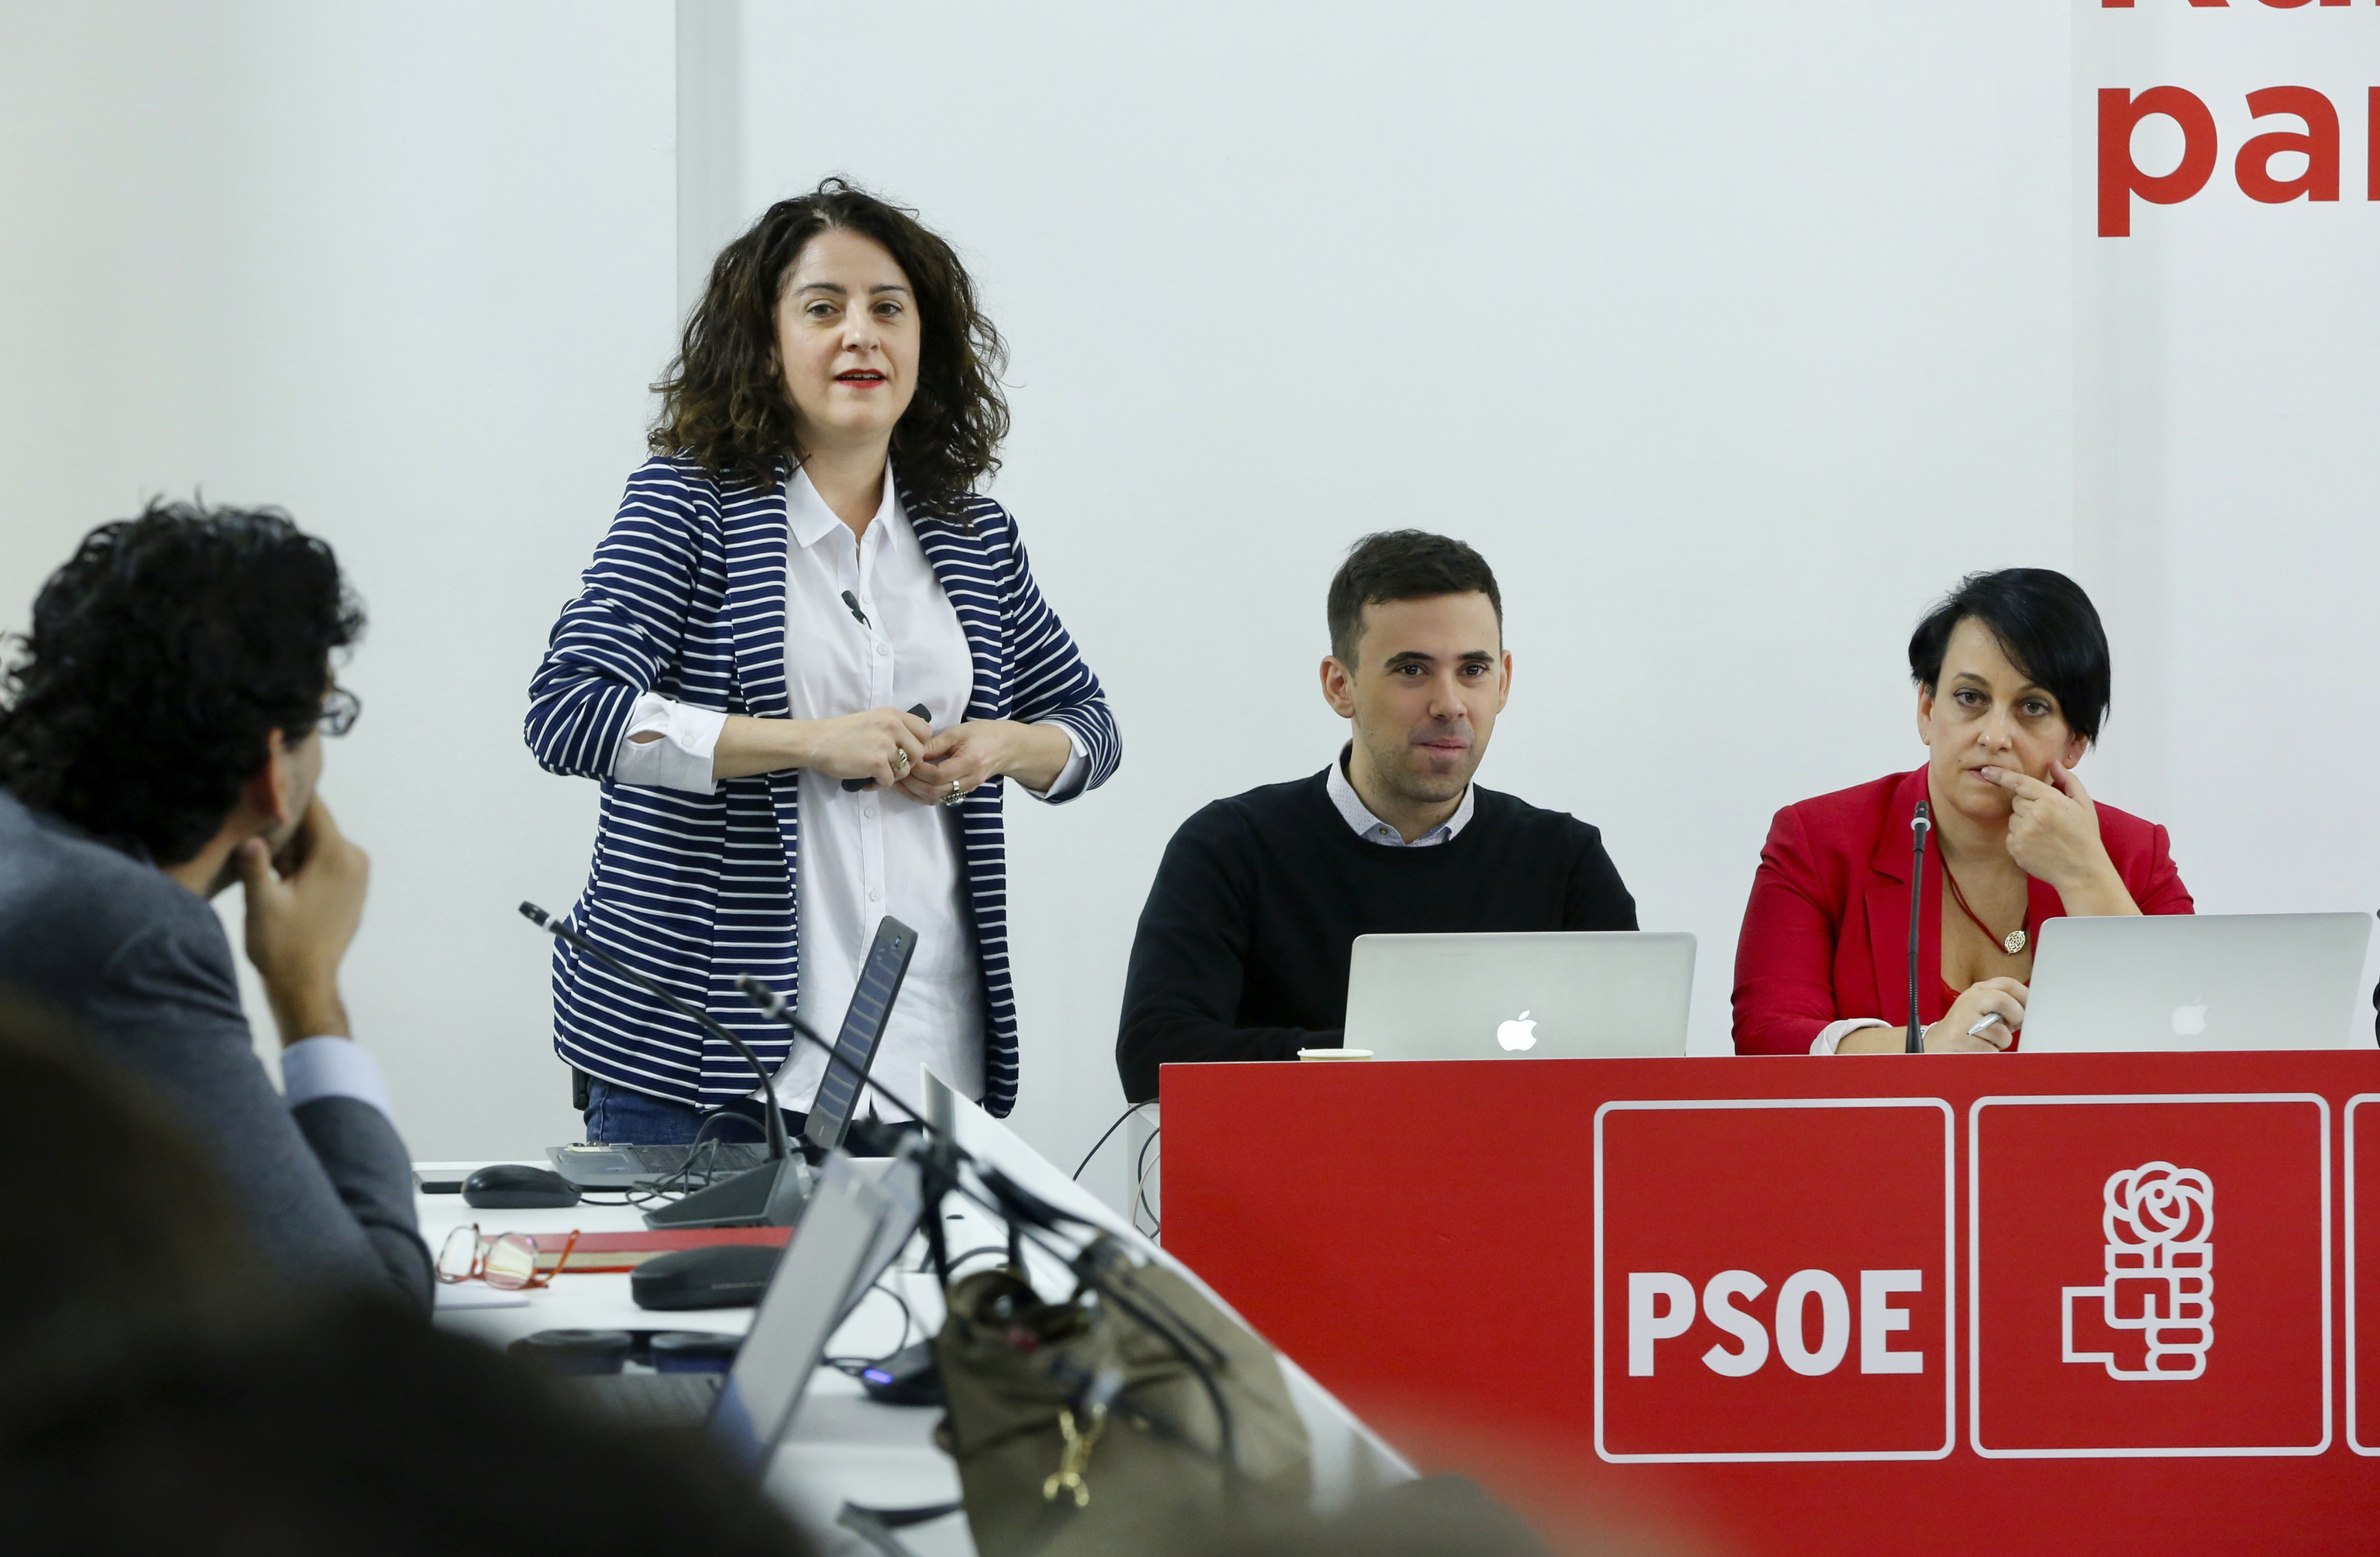 La nueva presidenta del Hipódromo de la Zarzuela, Maritcha Ruiz, cuando ocupaba la dirección de comunicación del PSOE.